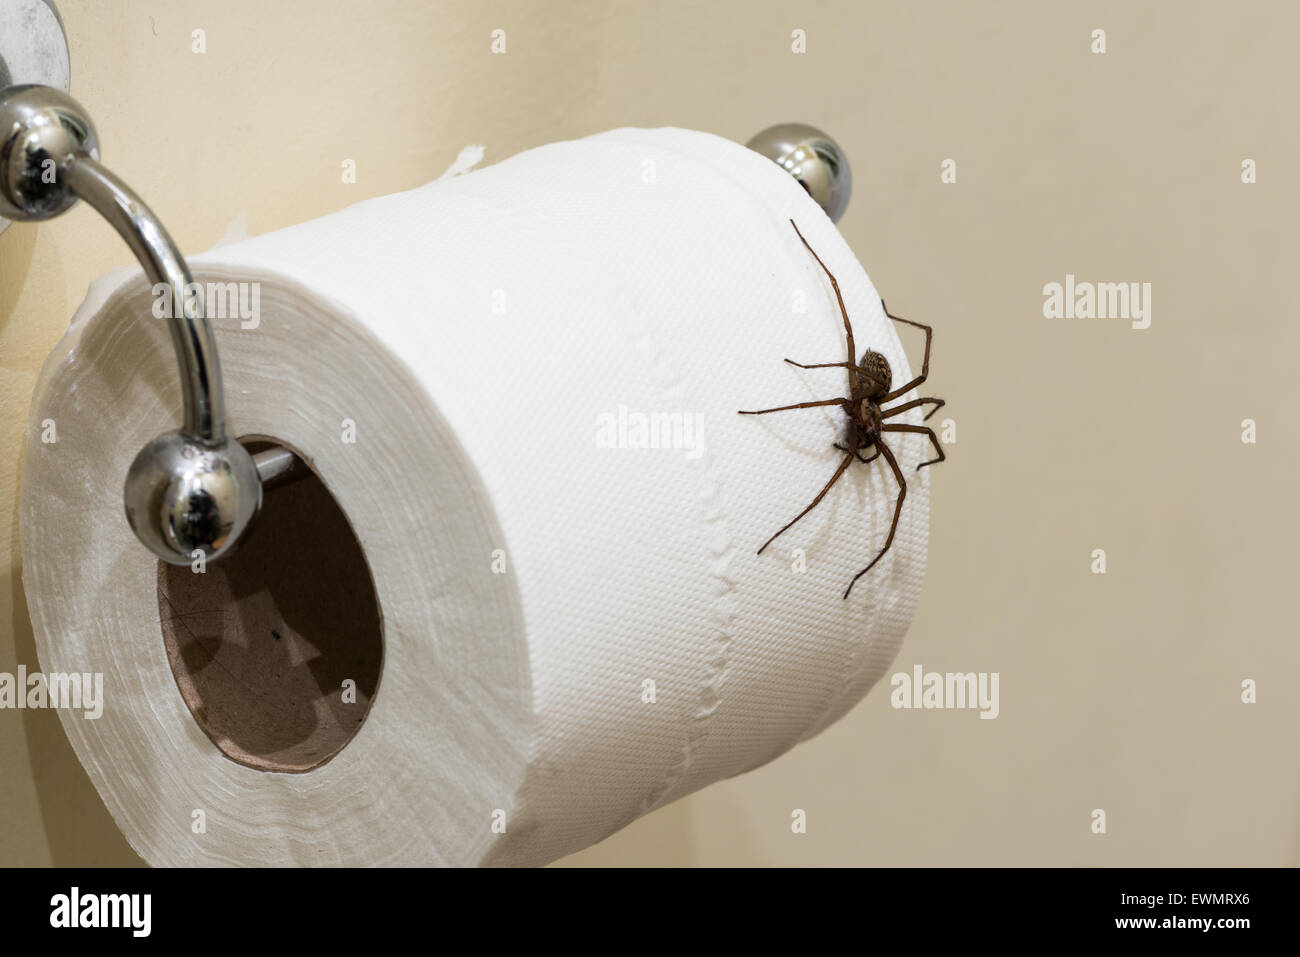 La peur d'entrer dans la salle de bains la plus grande araignée Tegenaria parietina domestique britannique se bloque sur un rouleau de peur de payer un loo penny Banque D'Images